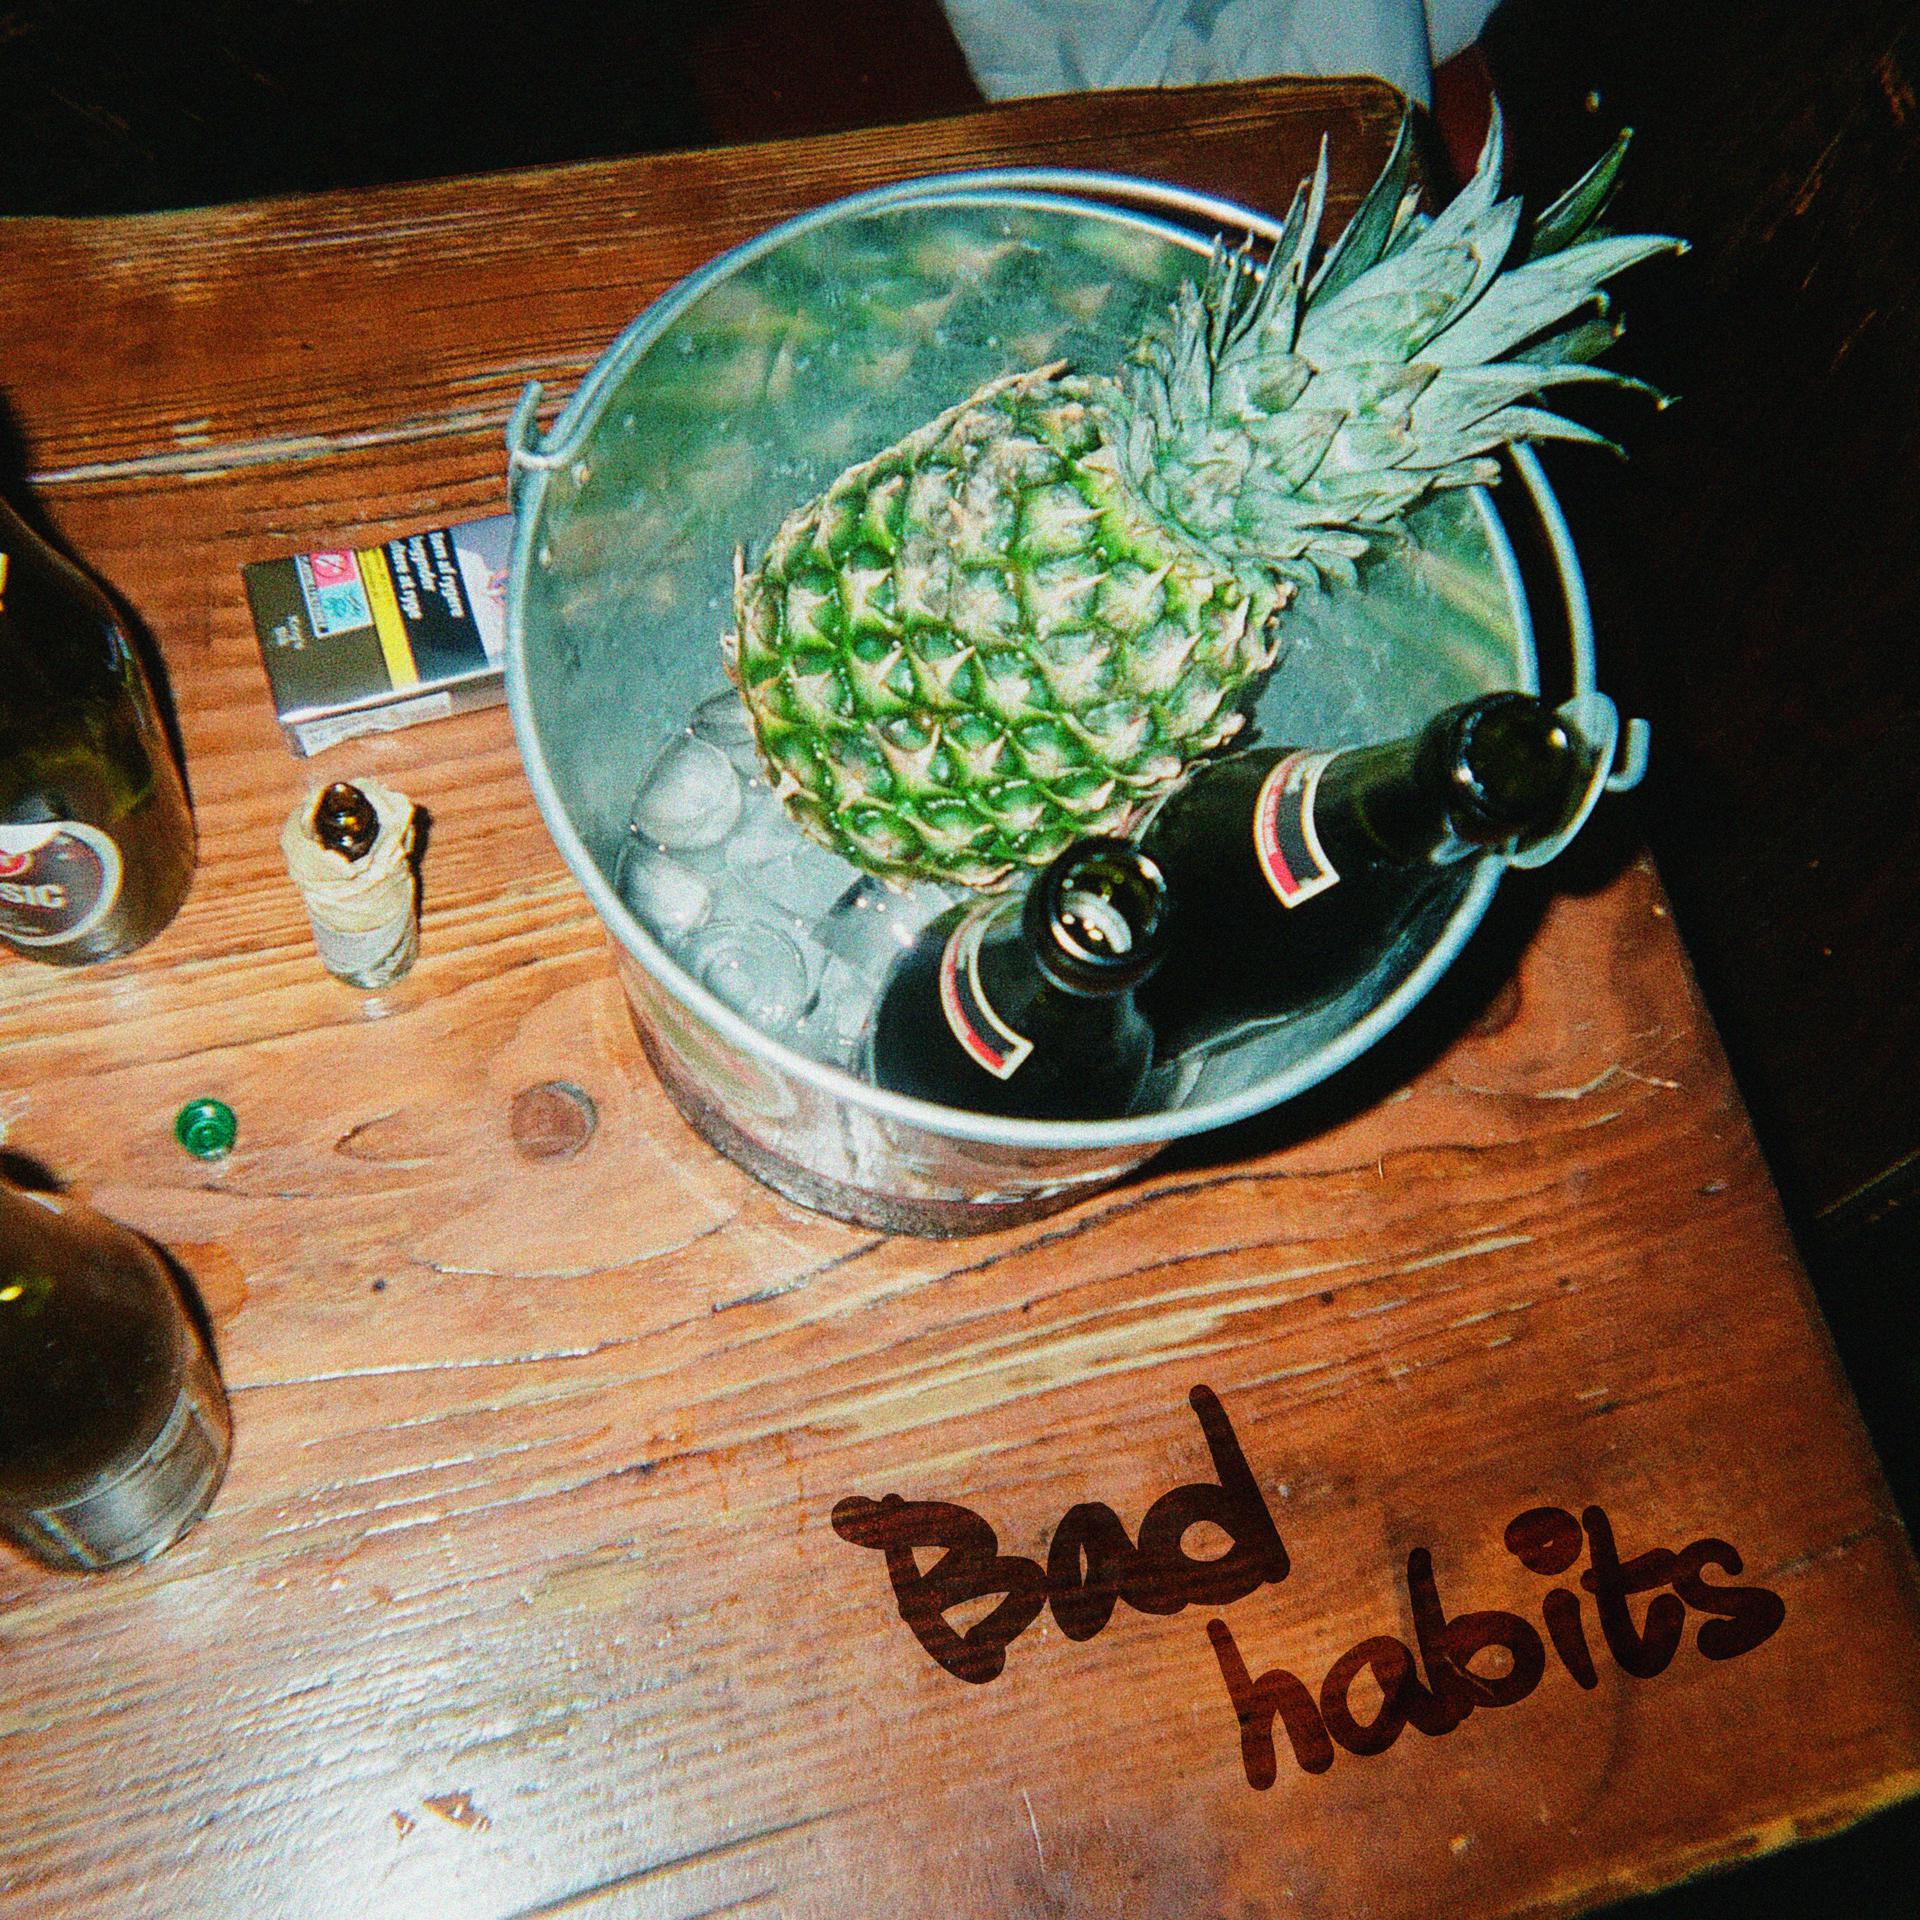 Постер альбома Bad Habits